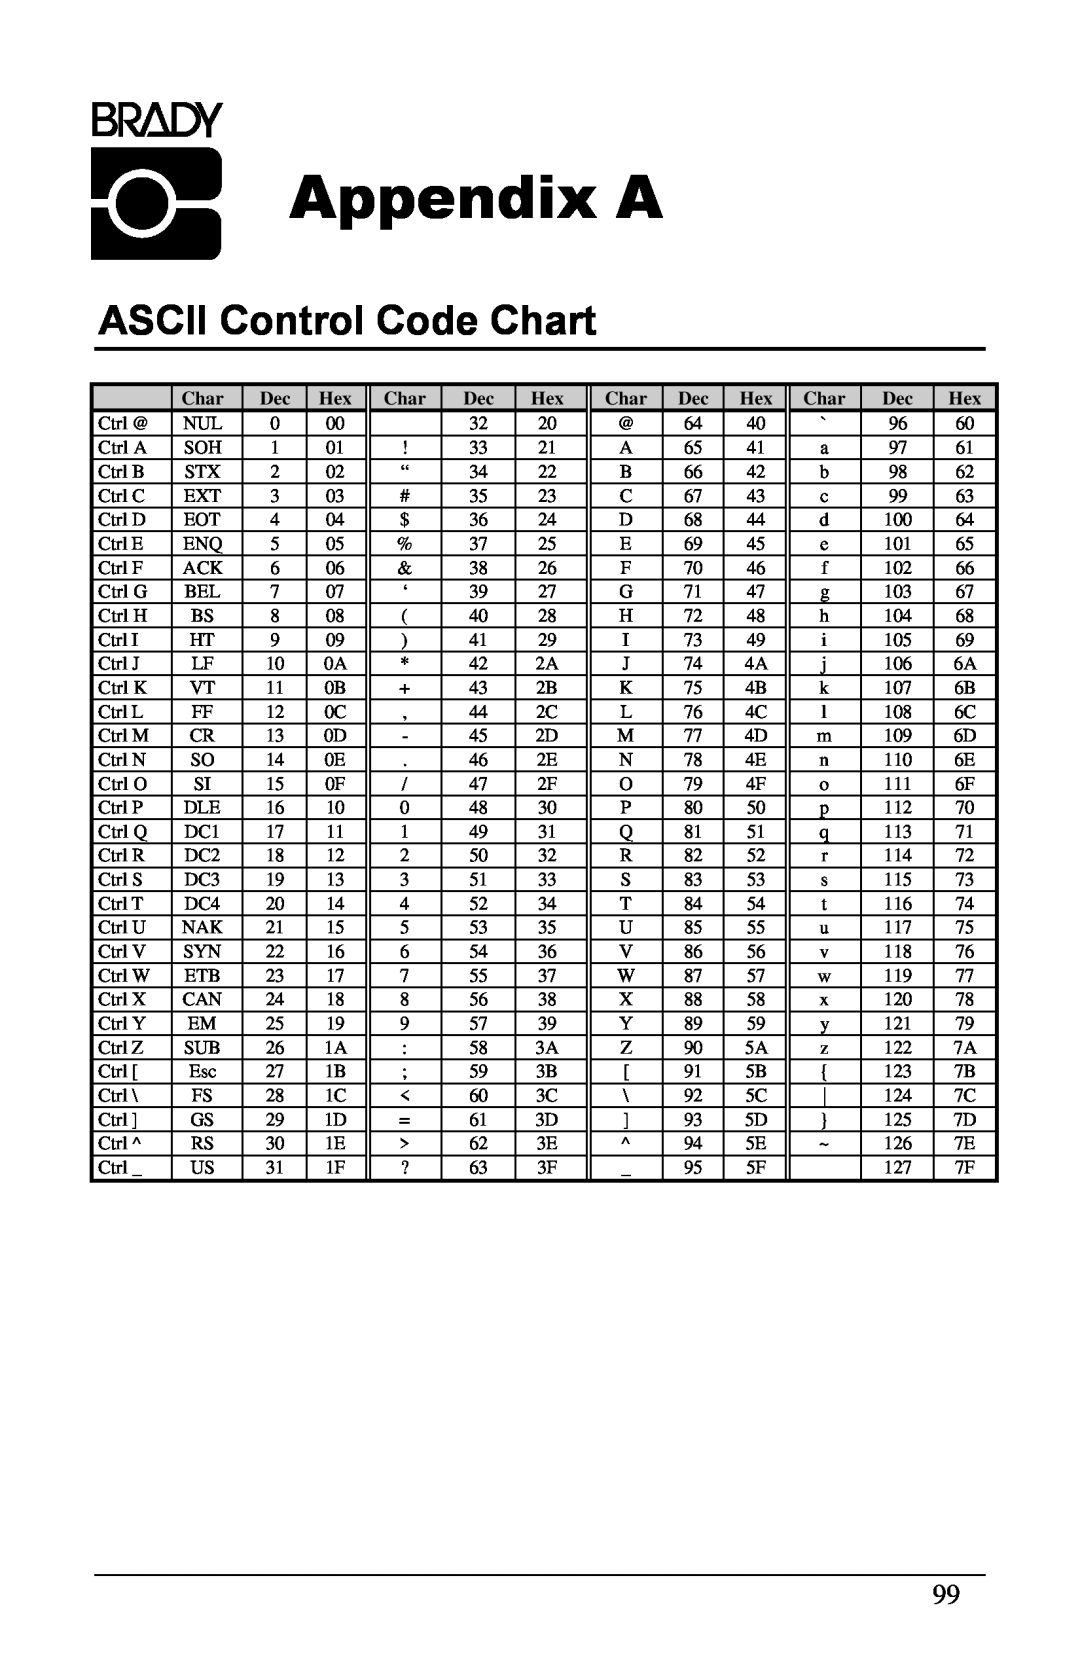 Brady 6441, 3481, 2461 manual Appendix A, ASCII Control Code Chart 